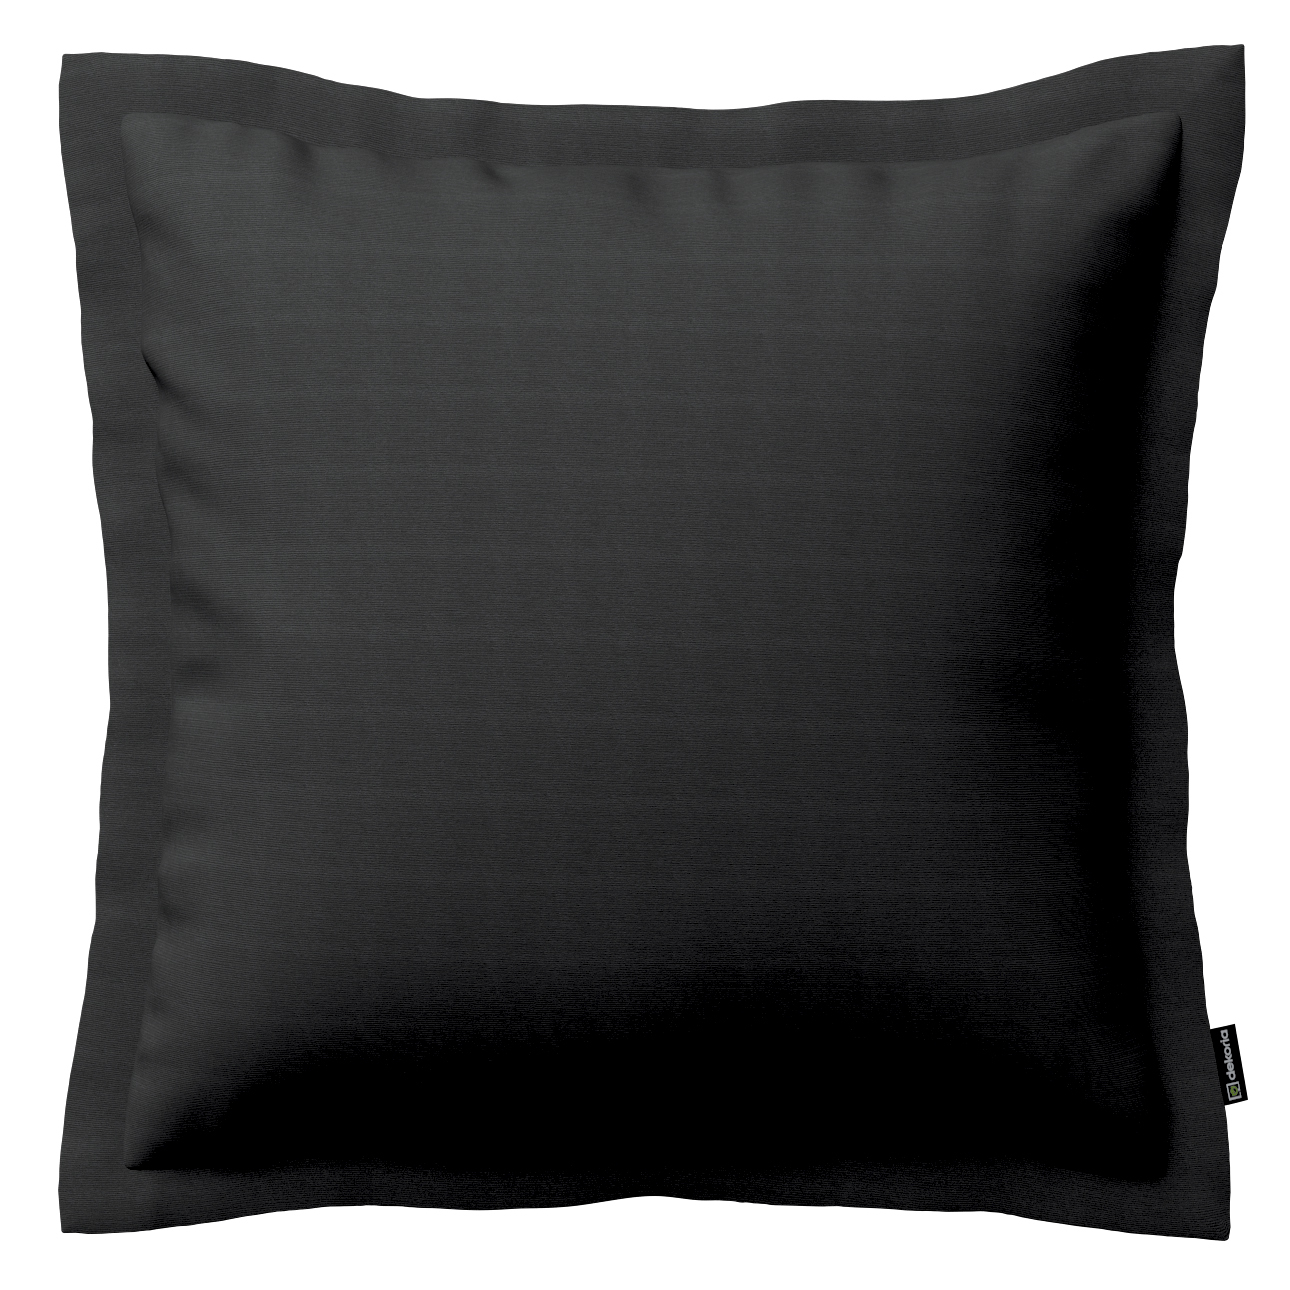 Kissenhülle Mona mit Stehsaum, schwarz, 45 x 45 cm, Loneta (133-06) günstig online kaufen